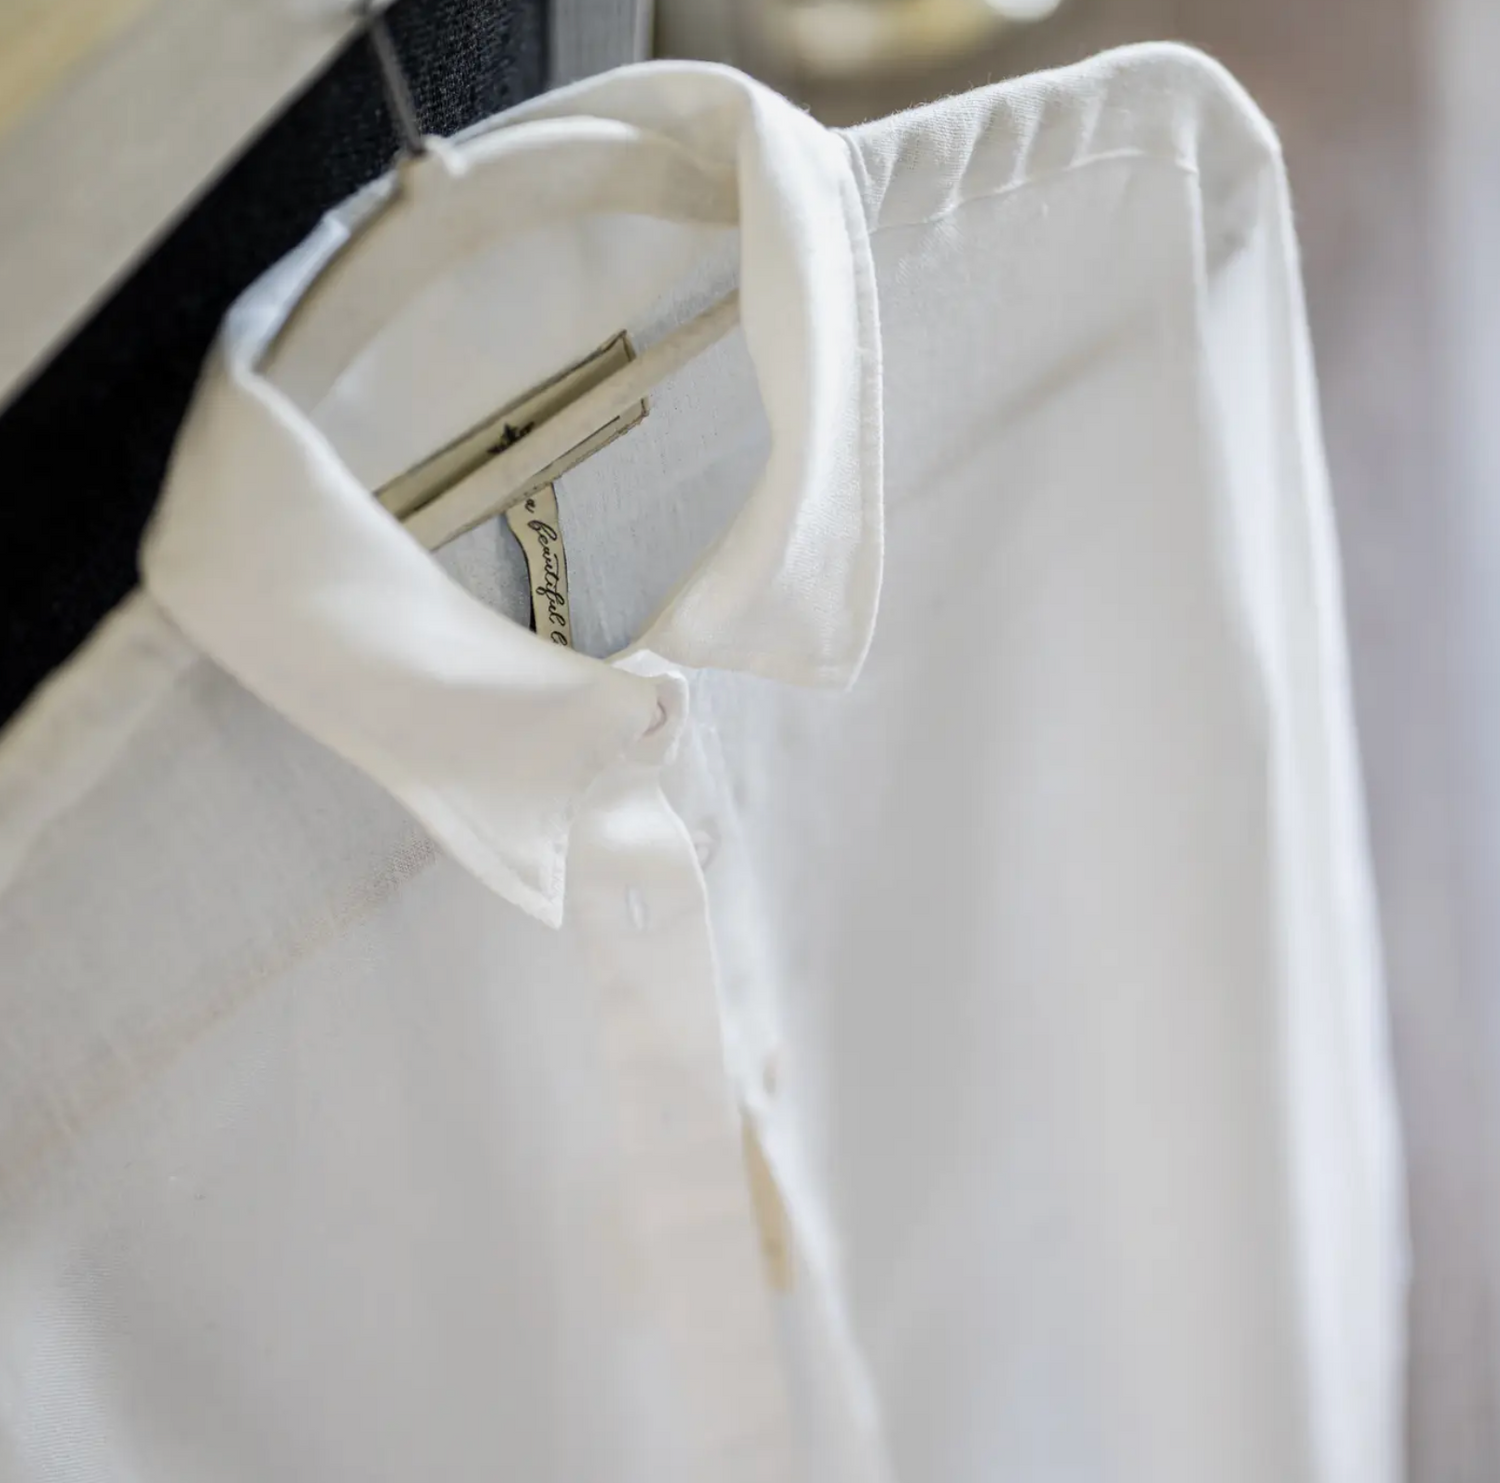 collar of linen shirt